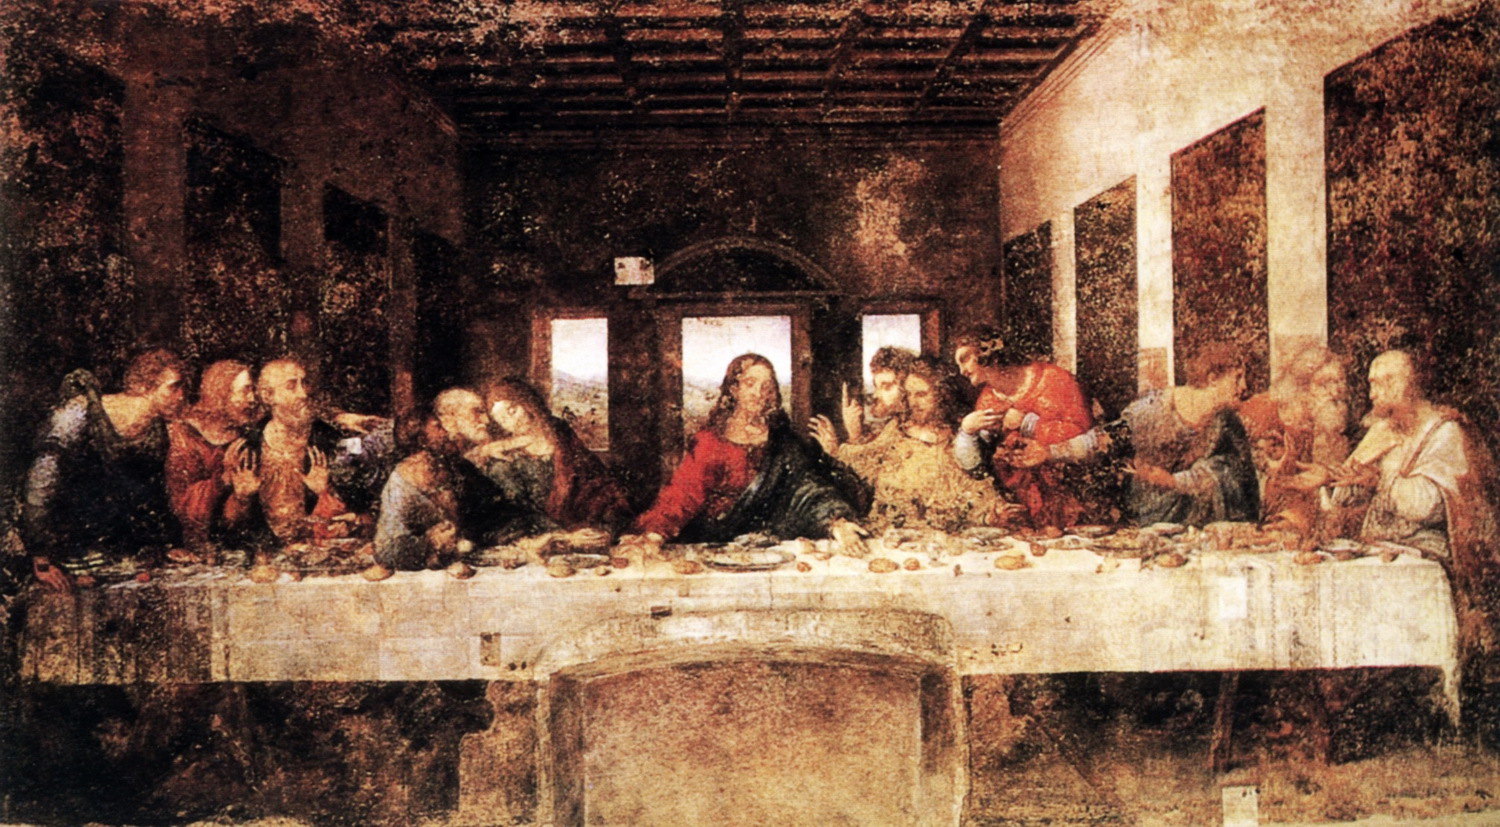 就是这个小教堂最有名了,达·芬奇创作的巨画《最后的晚餐》就画在这